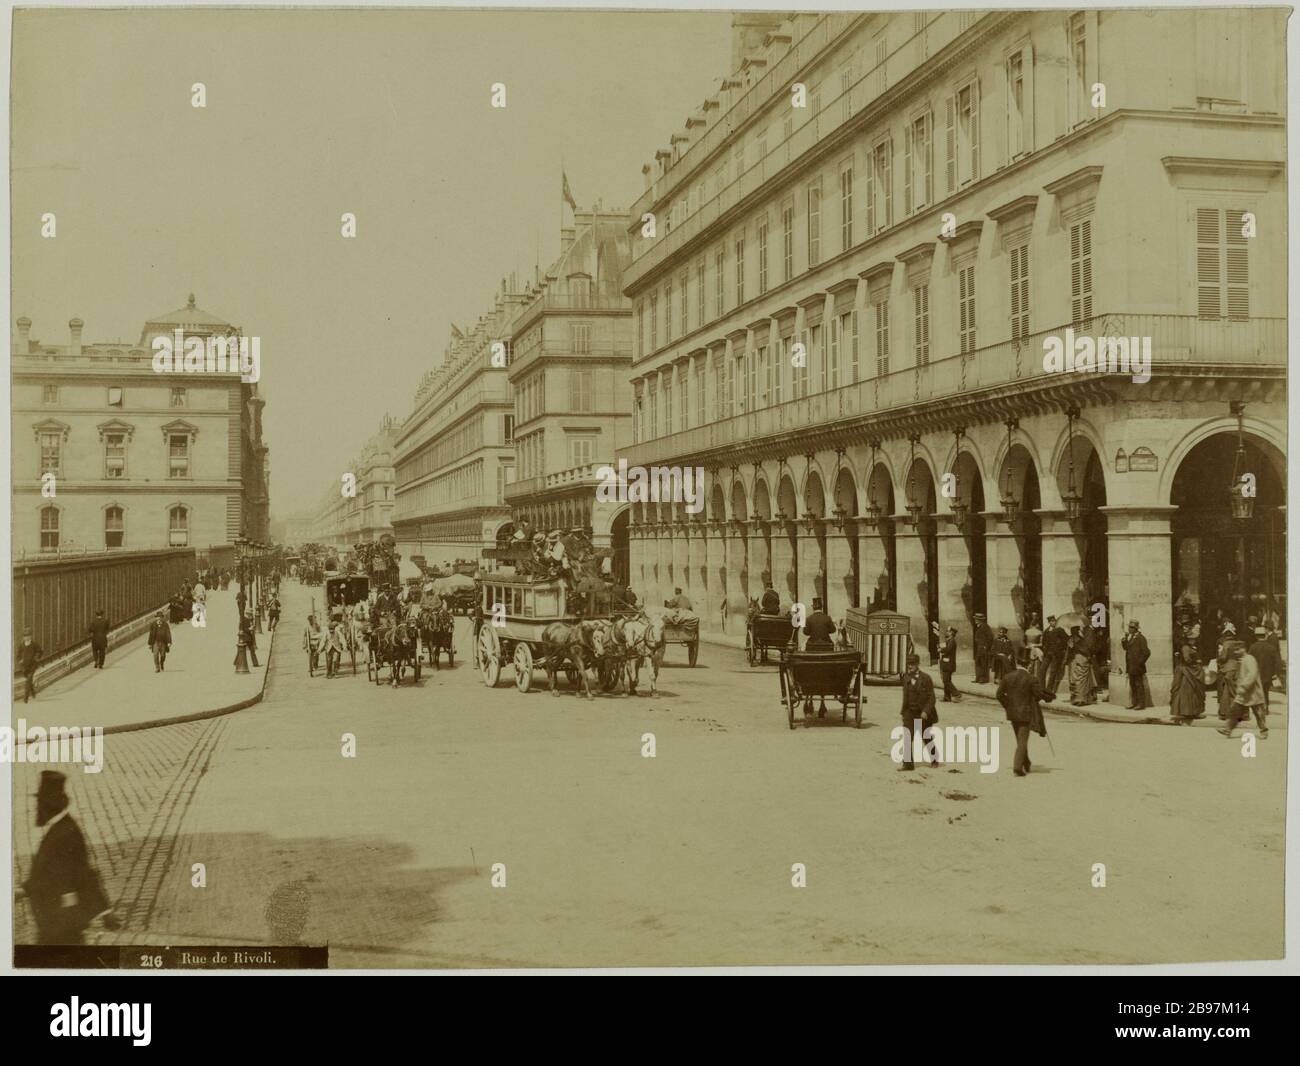 RUE DE RIVOLI, 1st district, PARIS Rue de Rivoli, Paris (Ier arr.). 1889-1900. Photographie anonyme. Paris, musée Carnavalet. Stock Photo